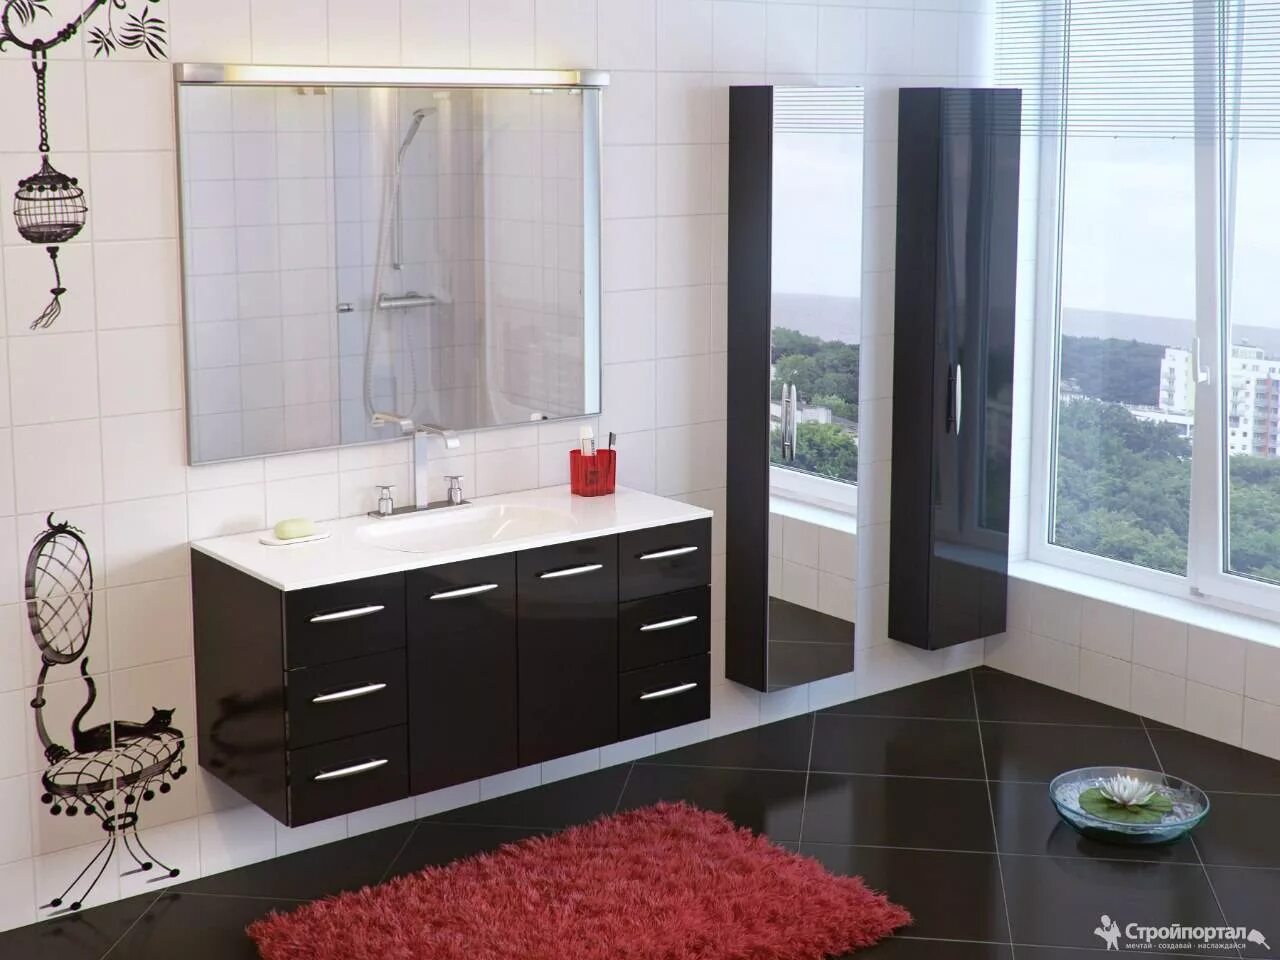 Лучшая мебель для ванны. Мебель для ванной комнаты. Красивая мебель для ванной комнаты. Комплект мебели в ванную комнату. Стильная ванная мебель.